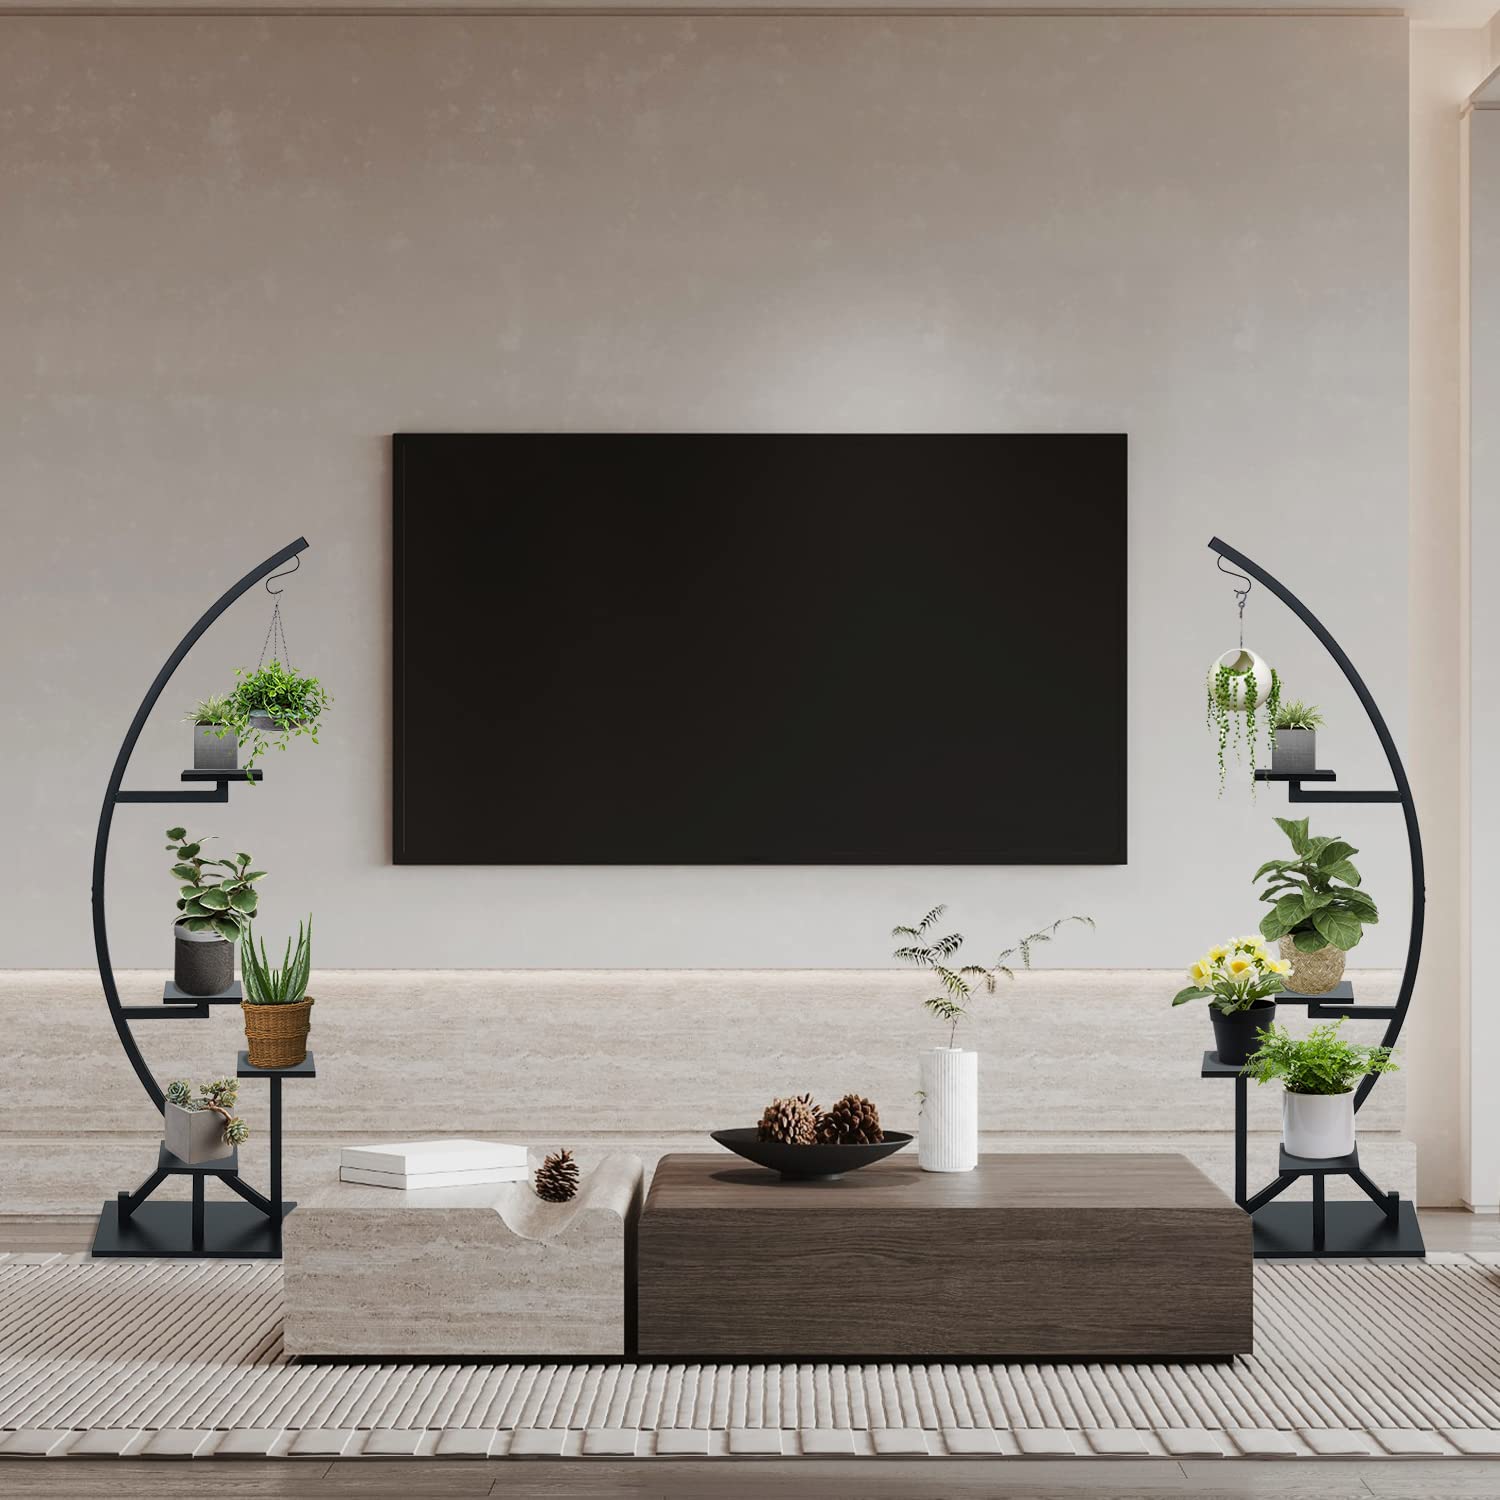 Black Plant Stand Indoor,2 PCS 5 Tier Flower Shelves Pot Holder GD001 is suitable for livingroom